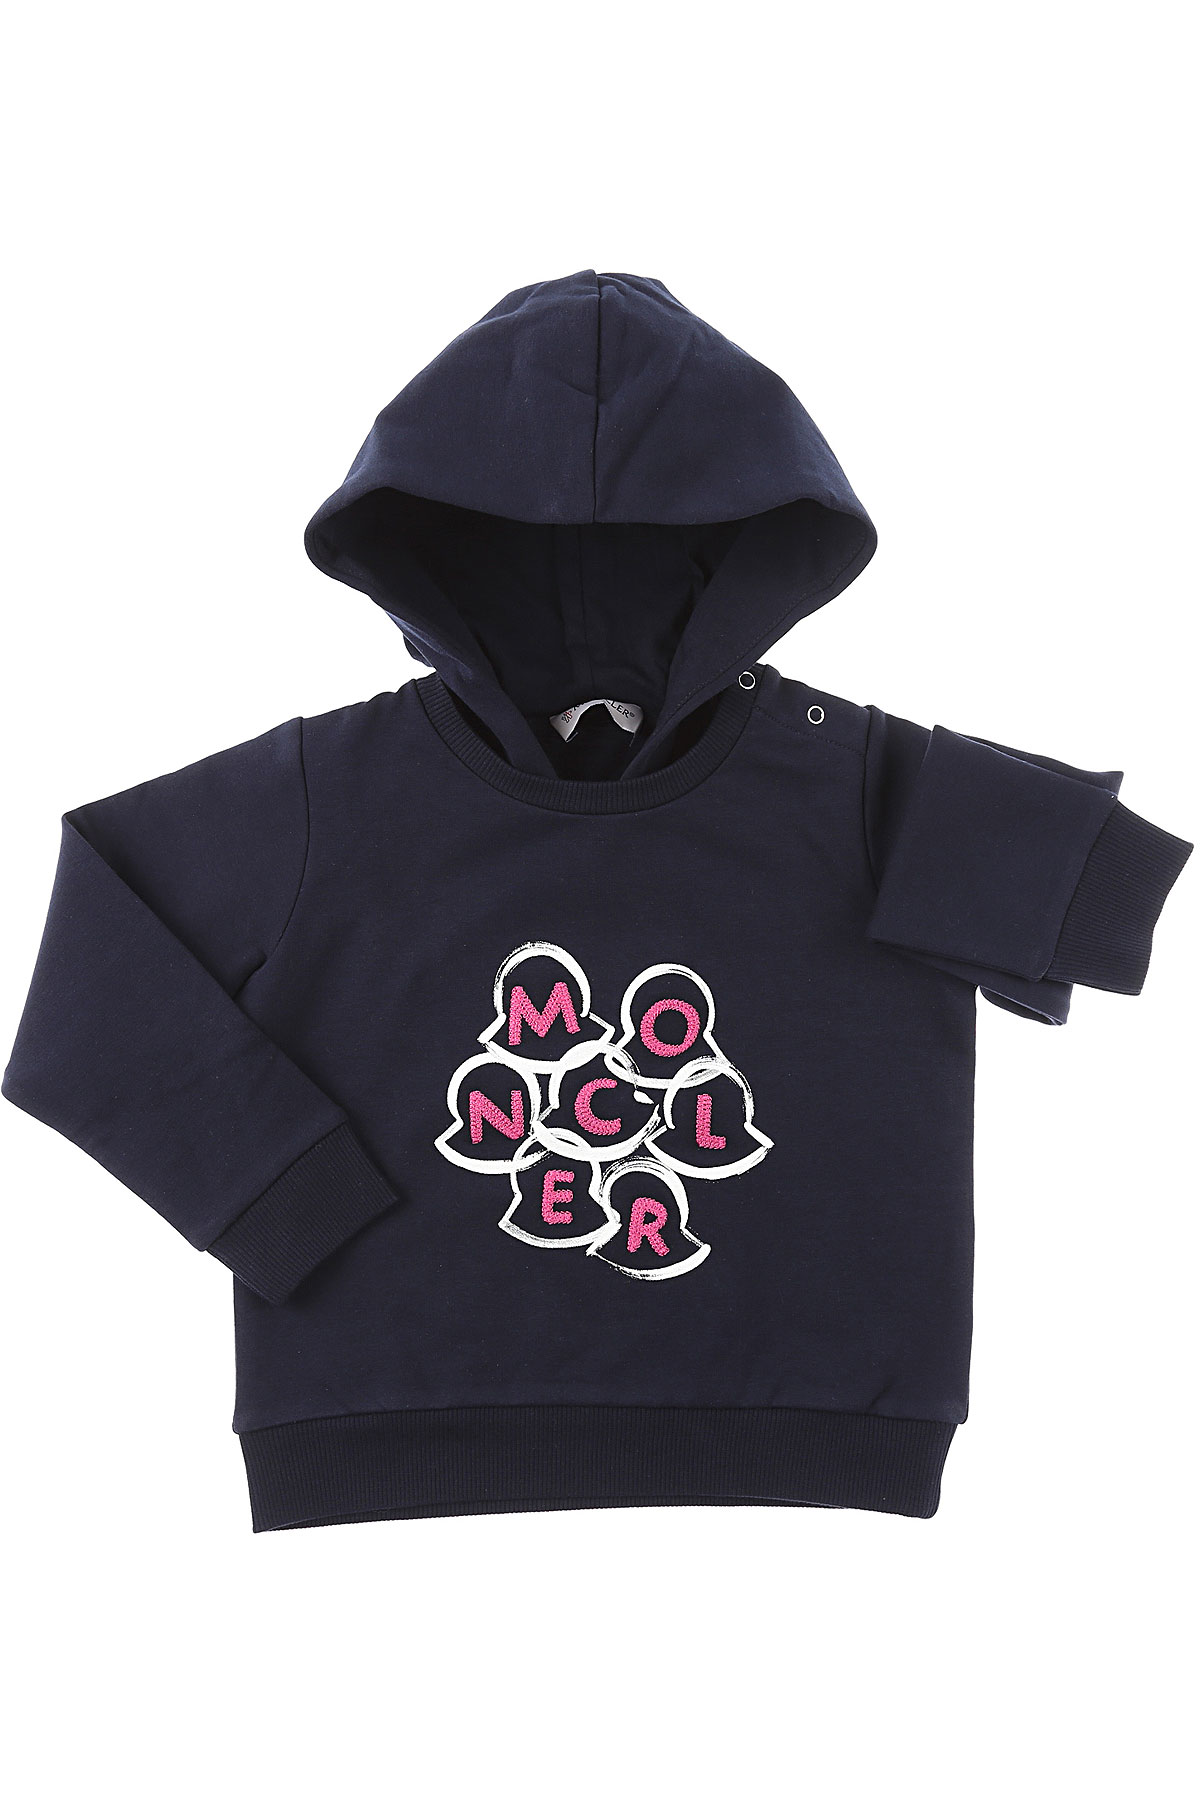 Moncler Baby Sweatshirt & Kapuzenpullover für Mädchen Günstig im Sale, Marine blau, Baumwolle, 2017, 12M 18M 2Y 3Y